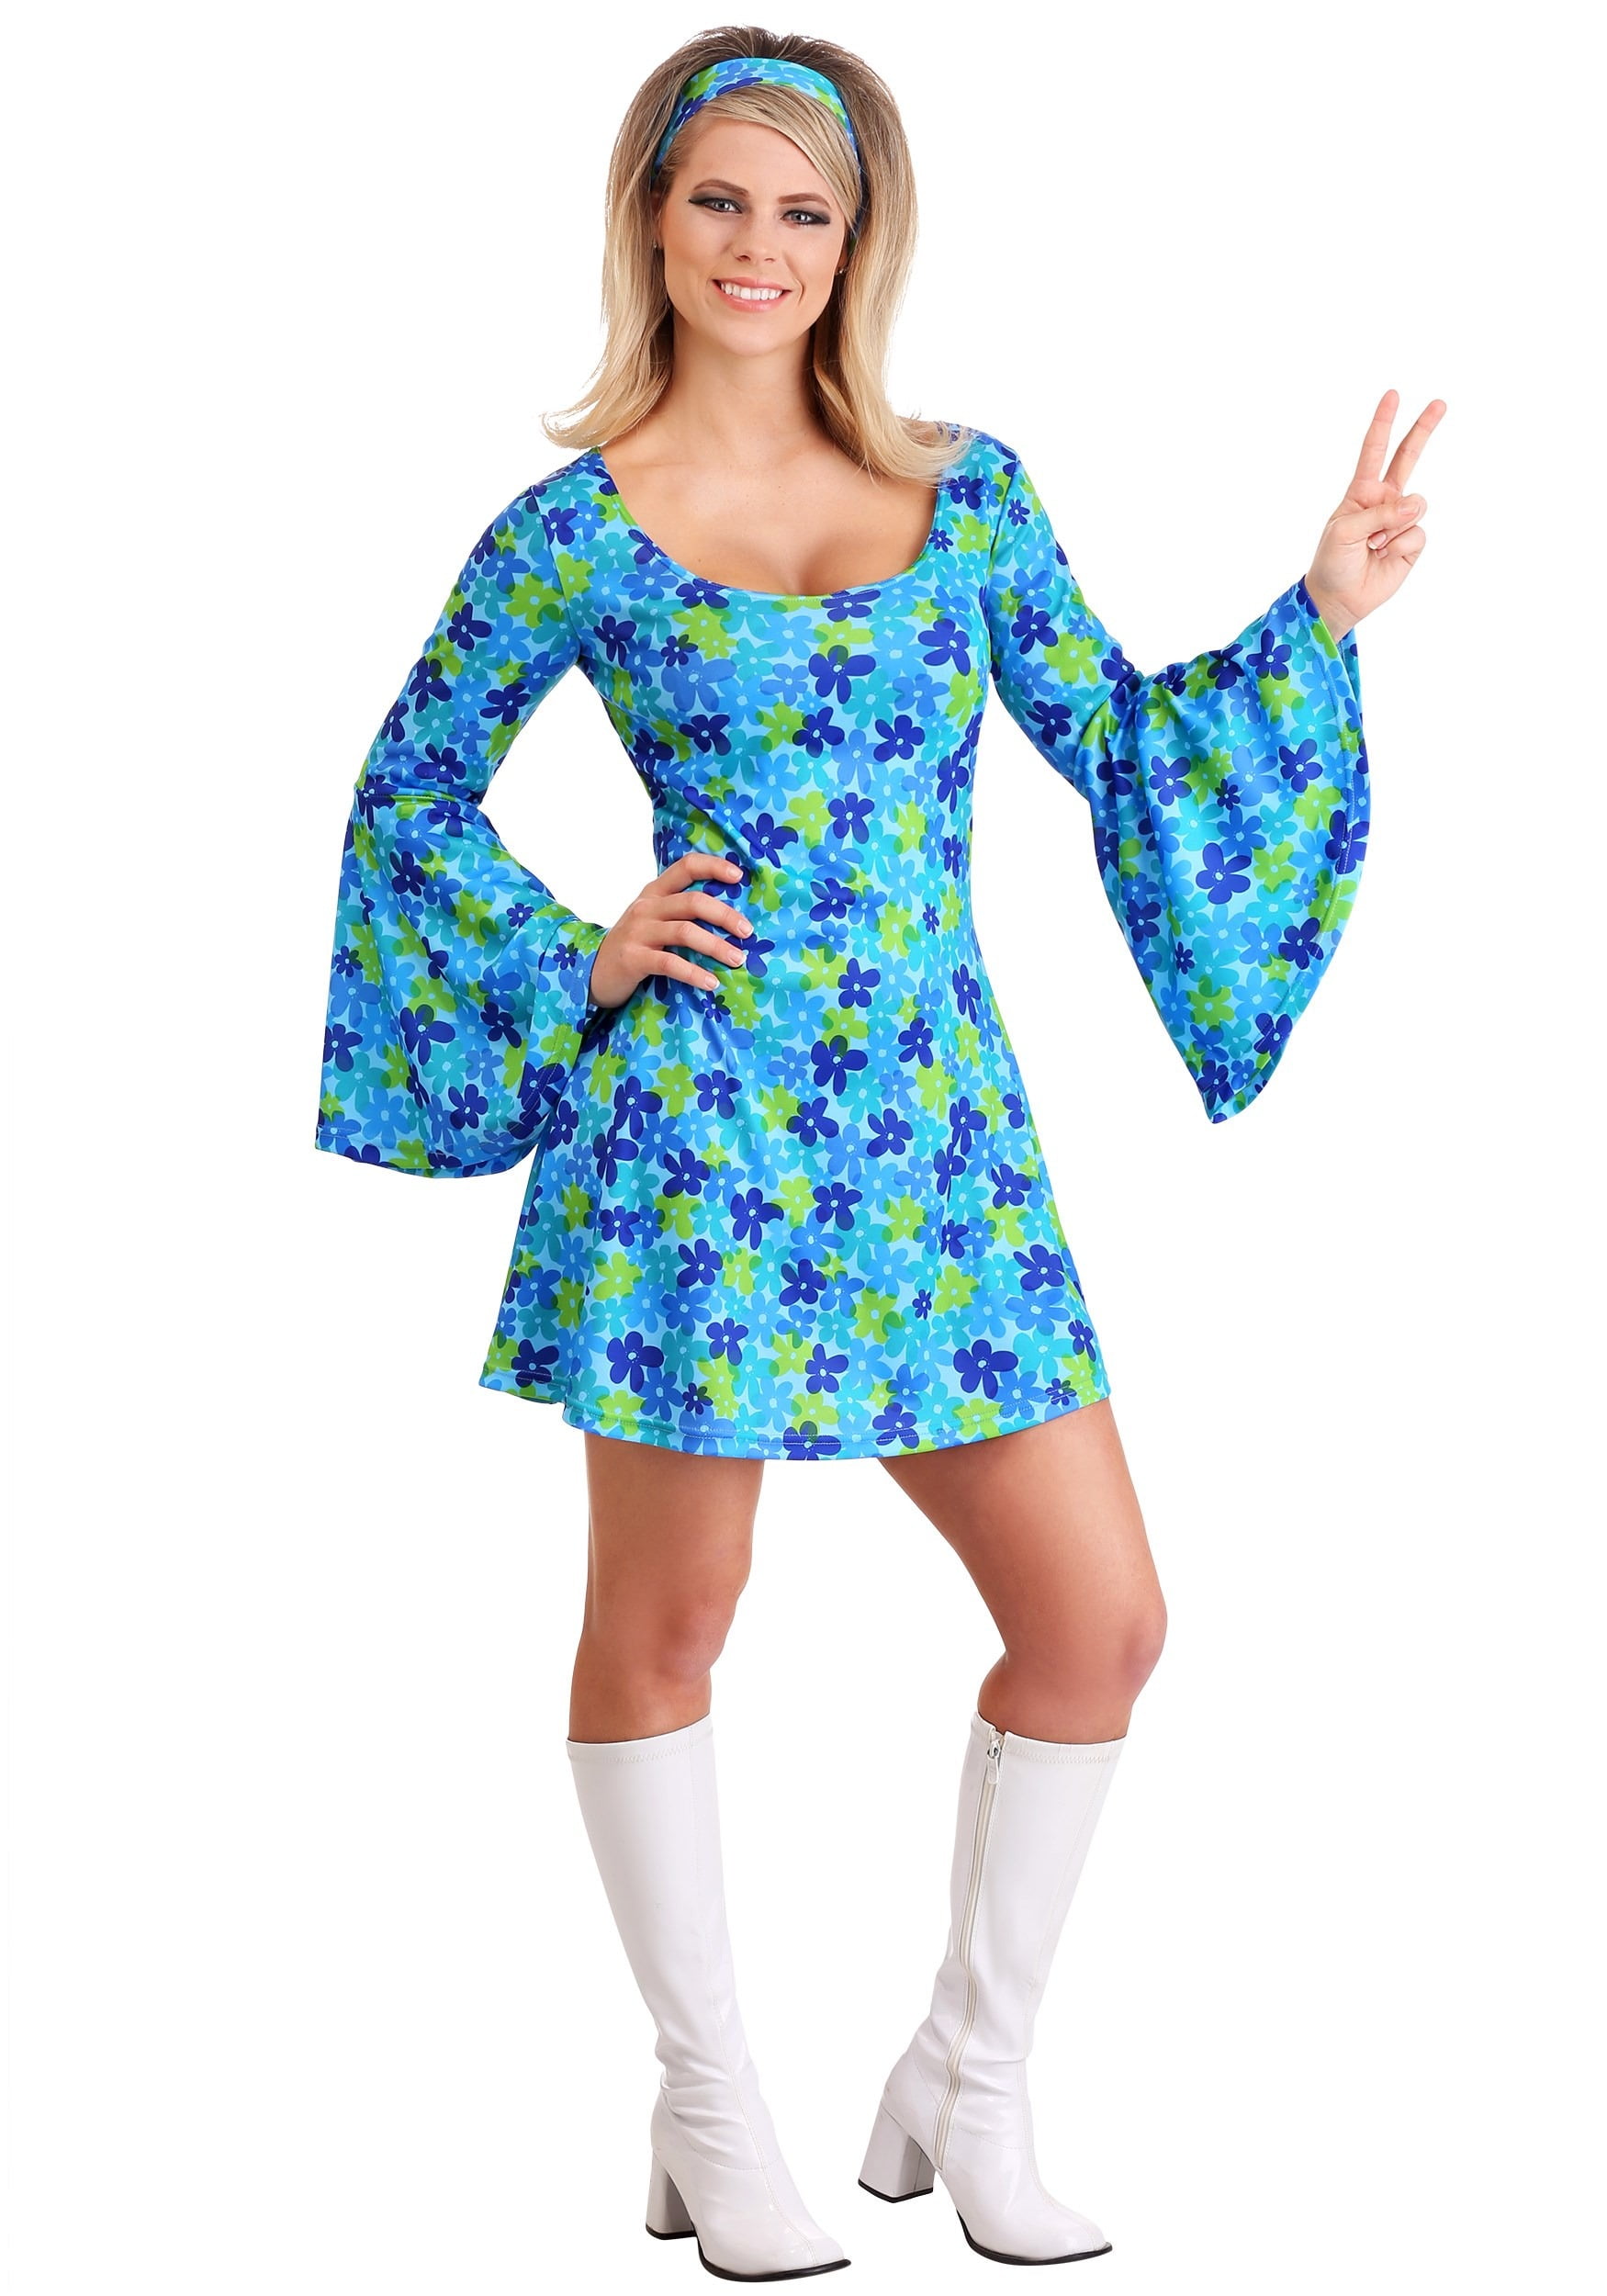 Par Republikanske parti skille sig ud Women's Plus Size Wild Flower 70s Disco Dress Costume - Walmart.com